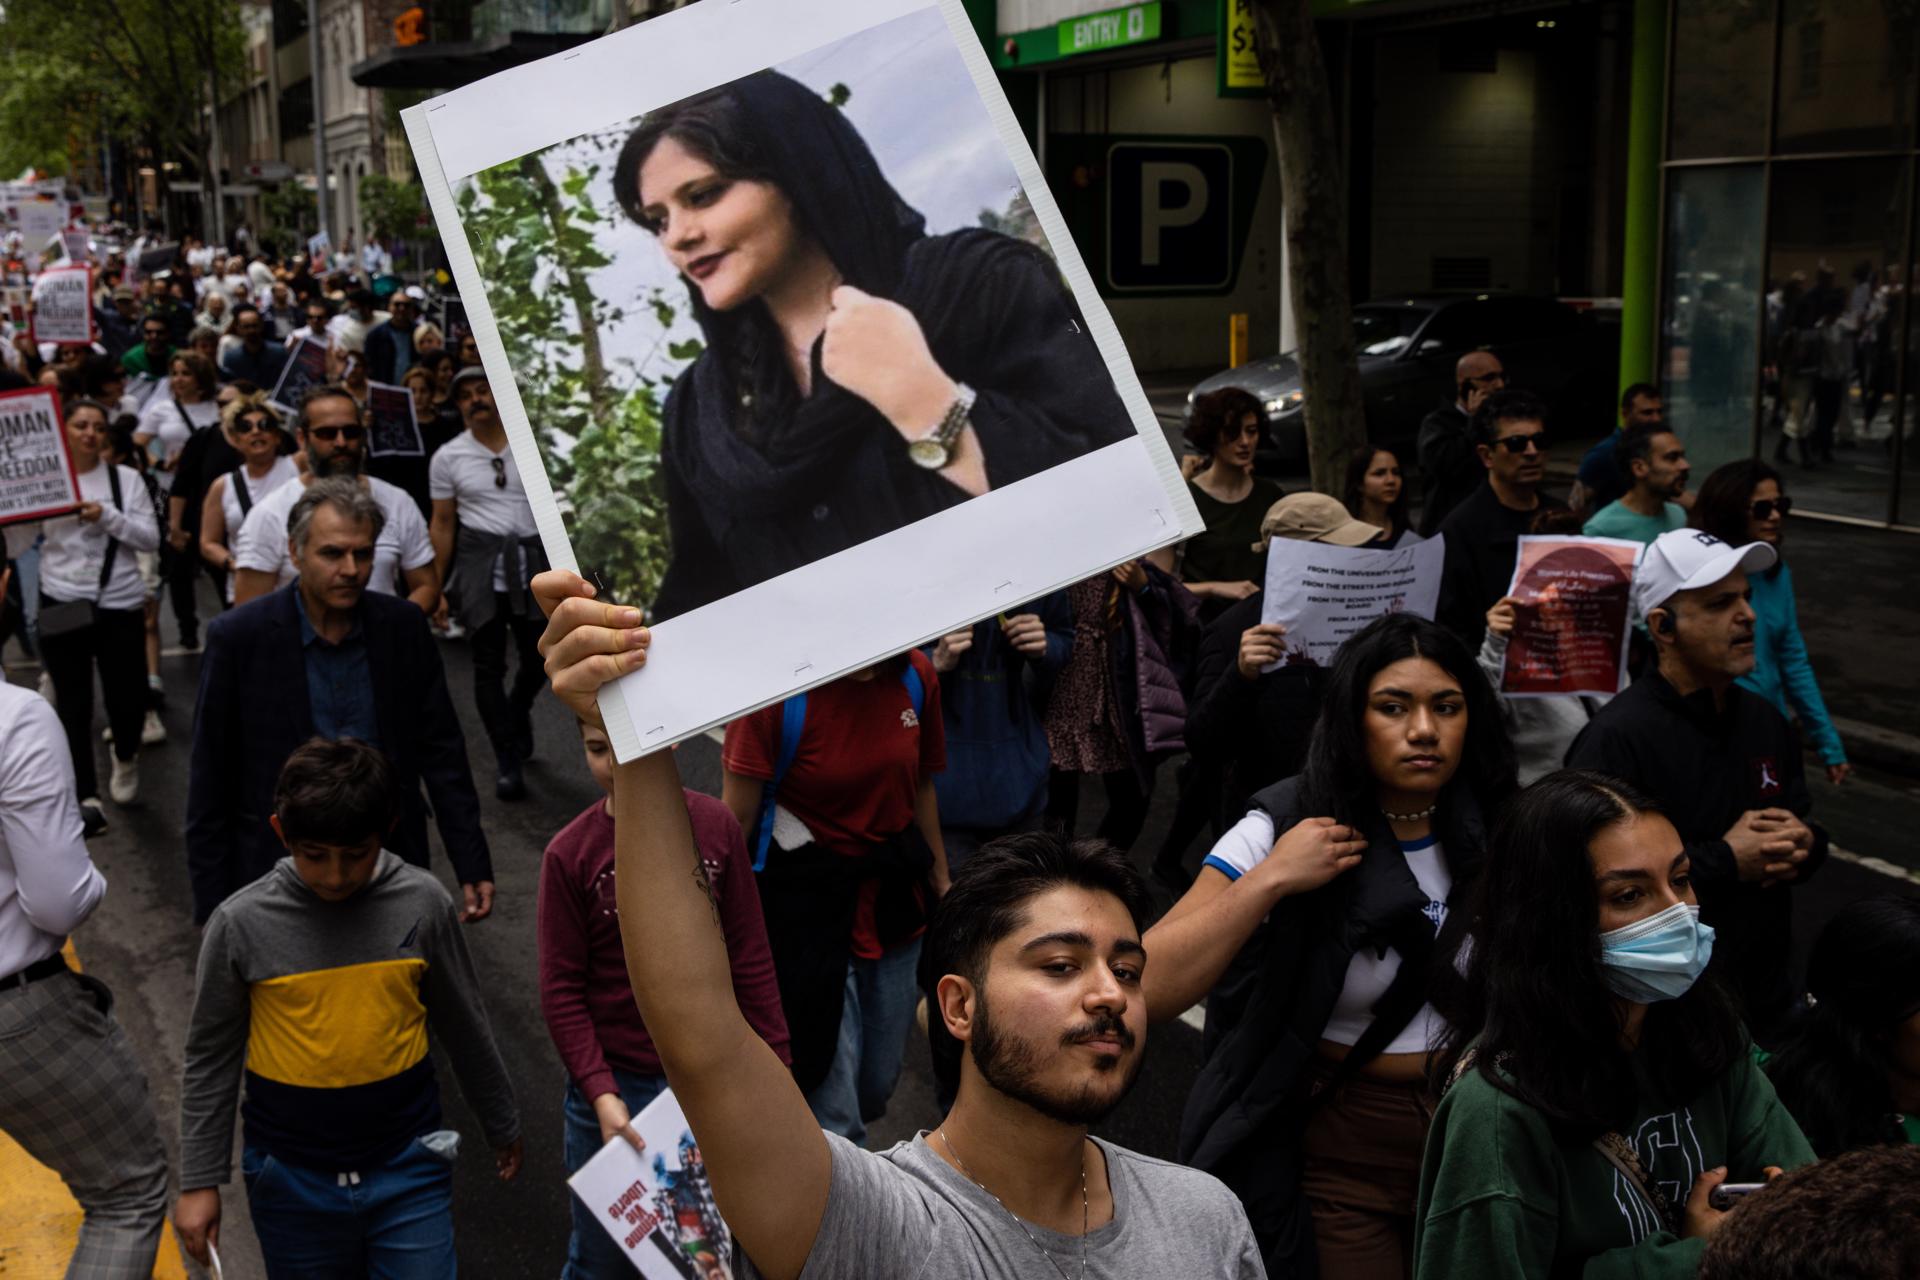 El descontento sigue ardiendo en Irán, pese a menor número de manifestaciones